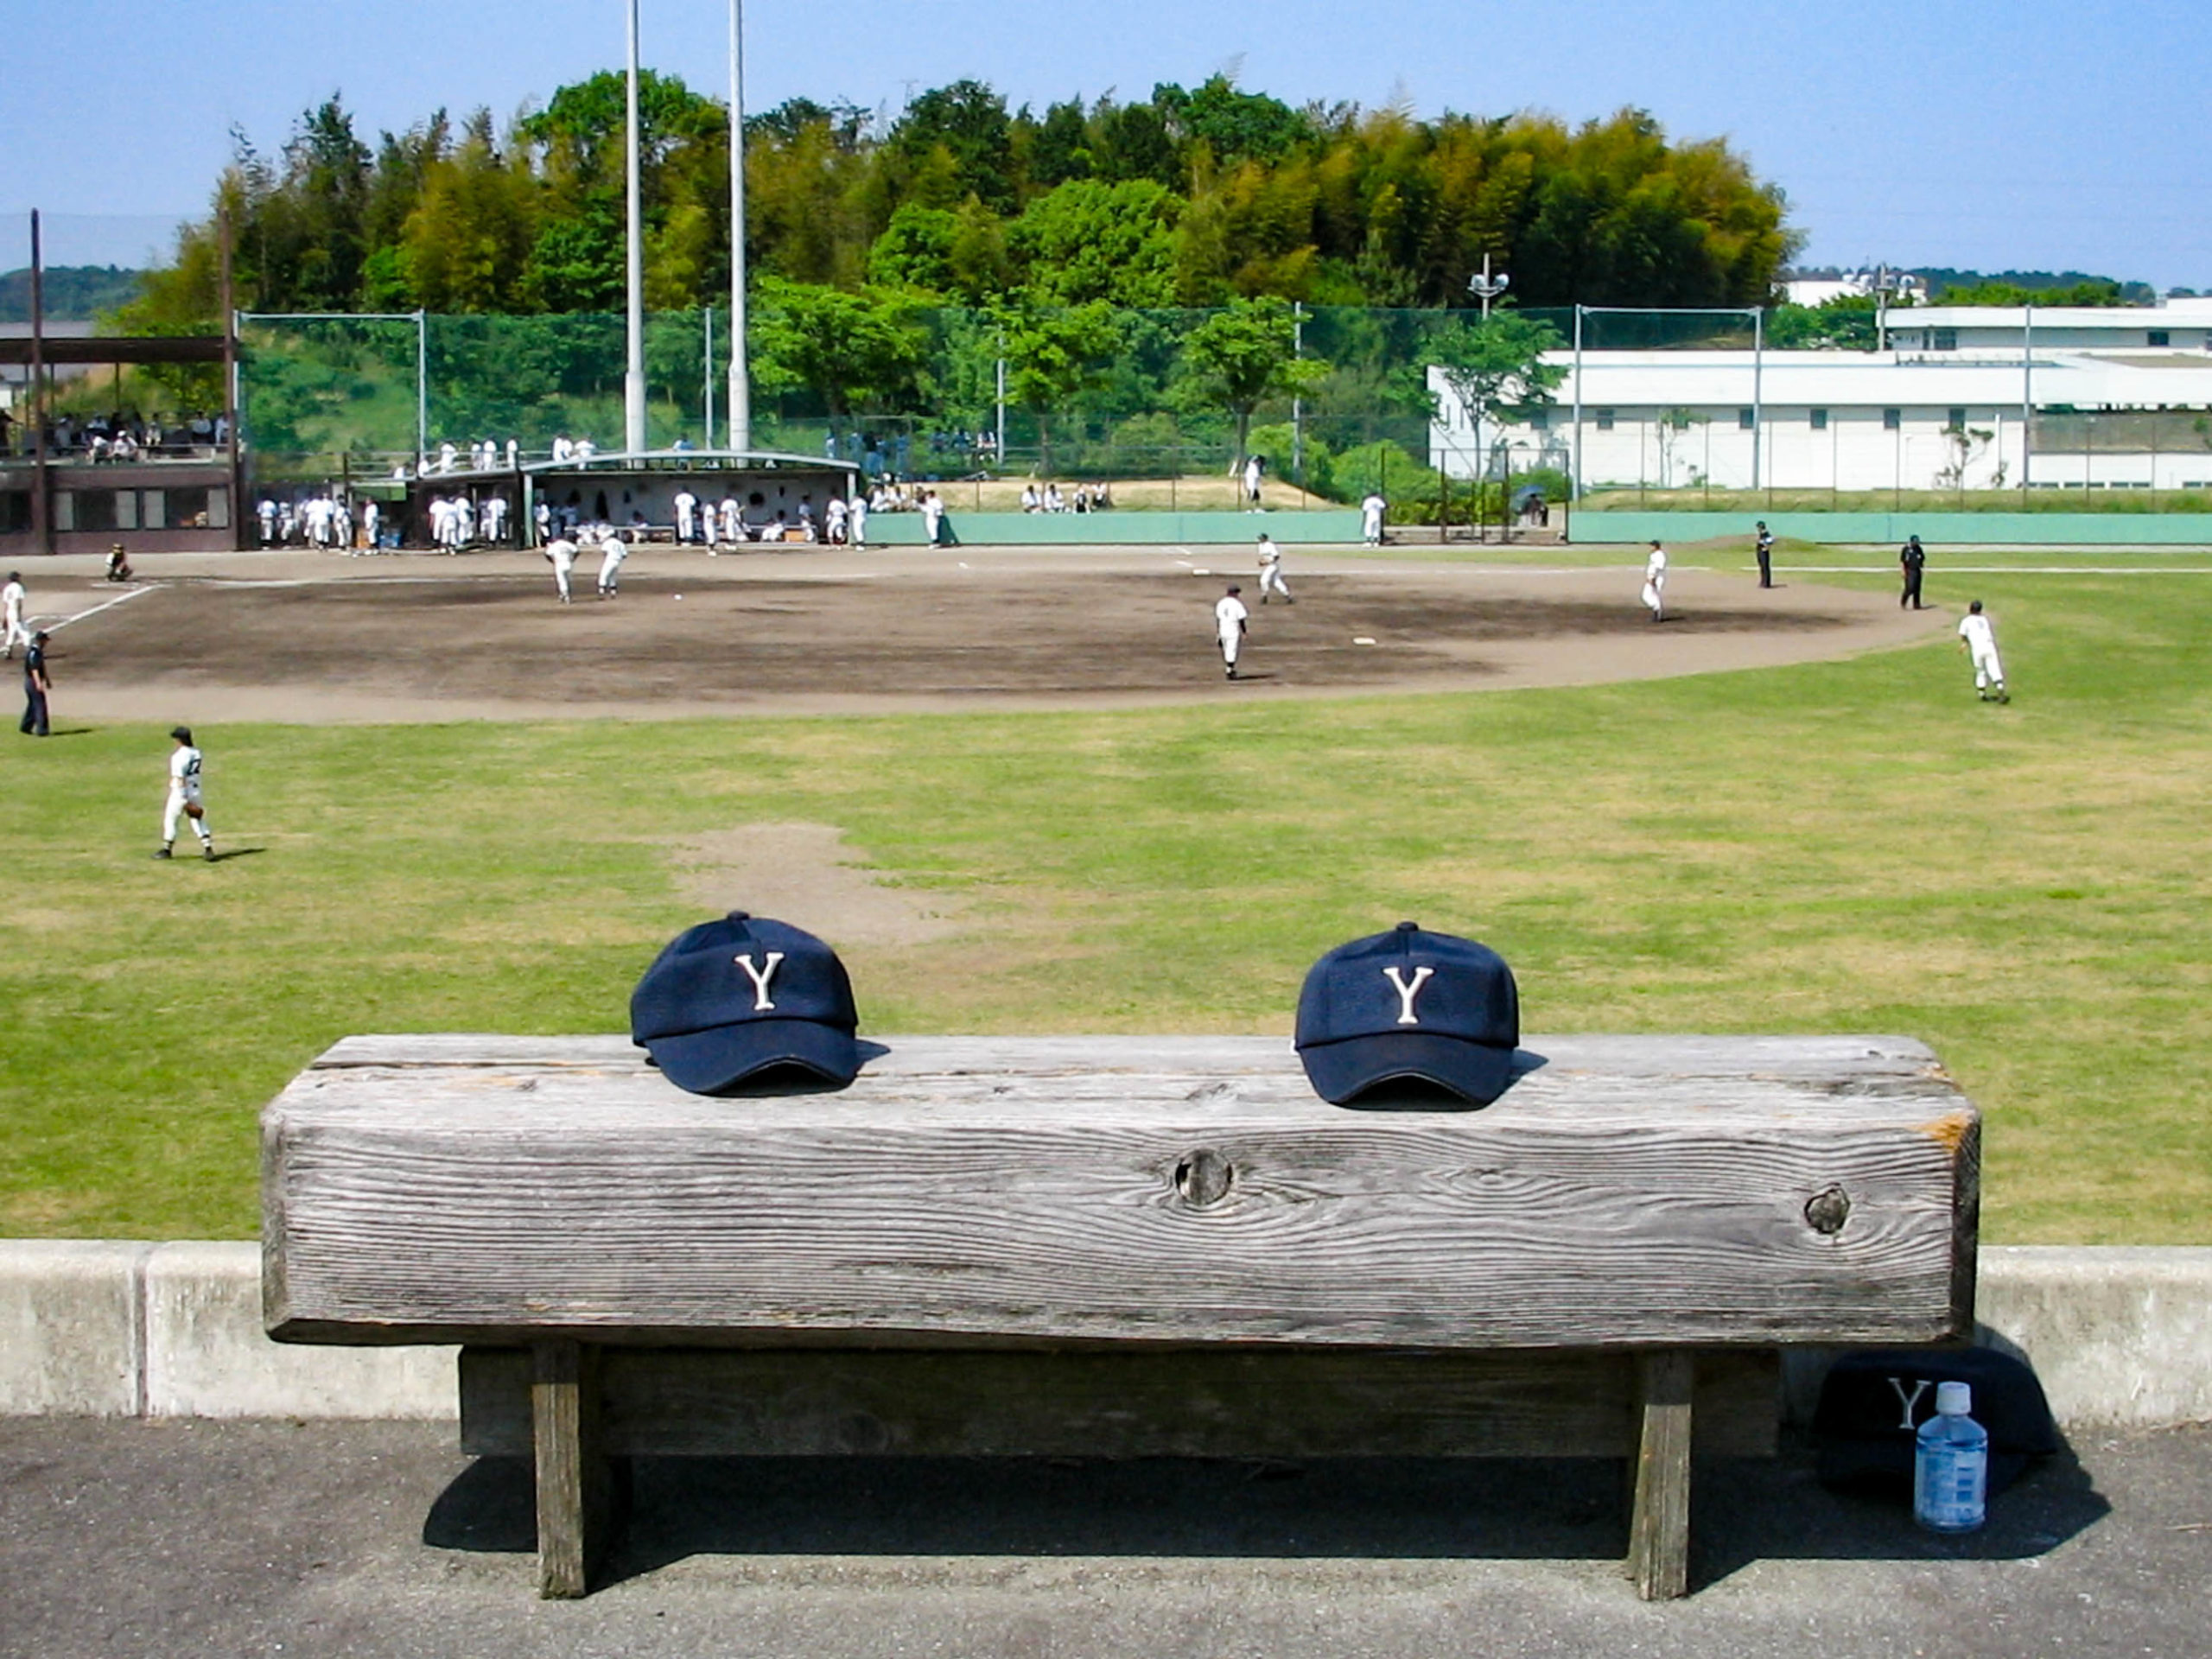 ベンチに置かれた2つの野球帽の写真